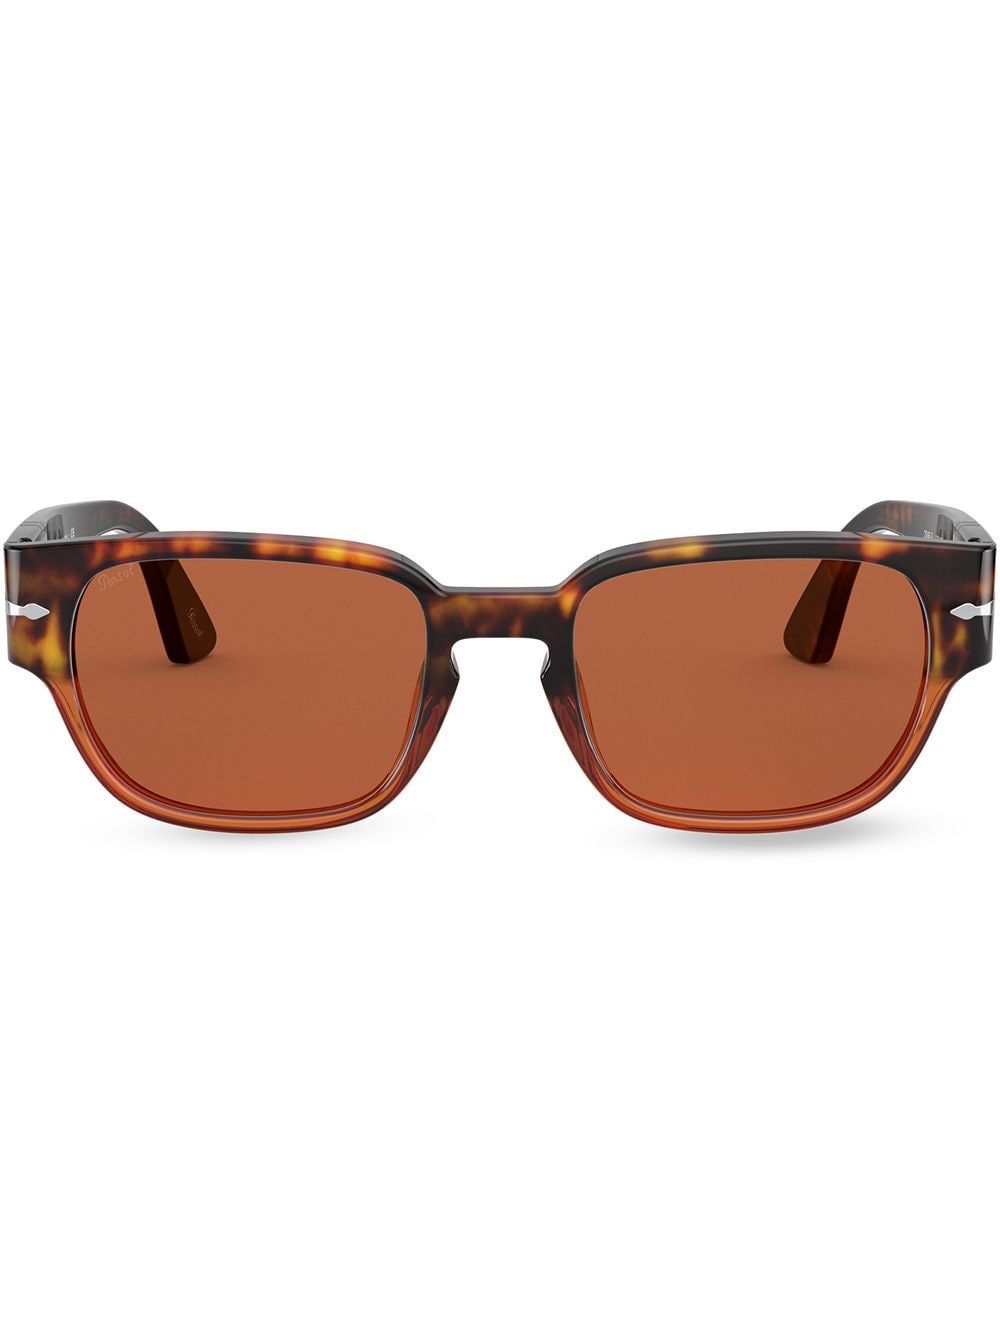 фото Persol солнцезащитные очки в квадратной оправе черепаховой расцветки